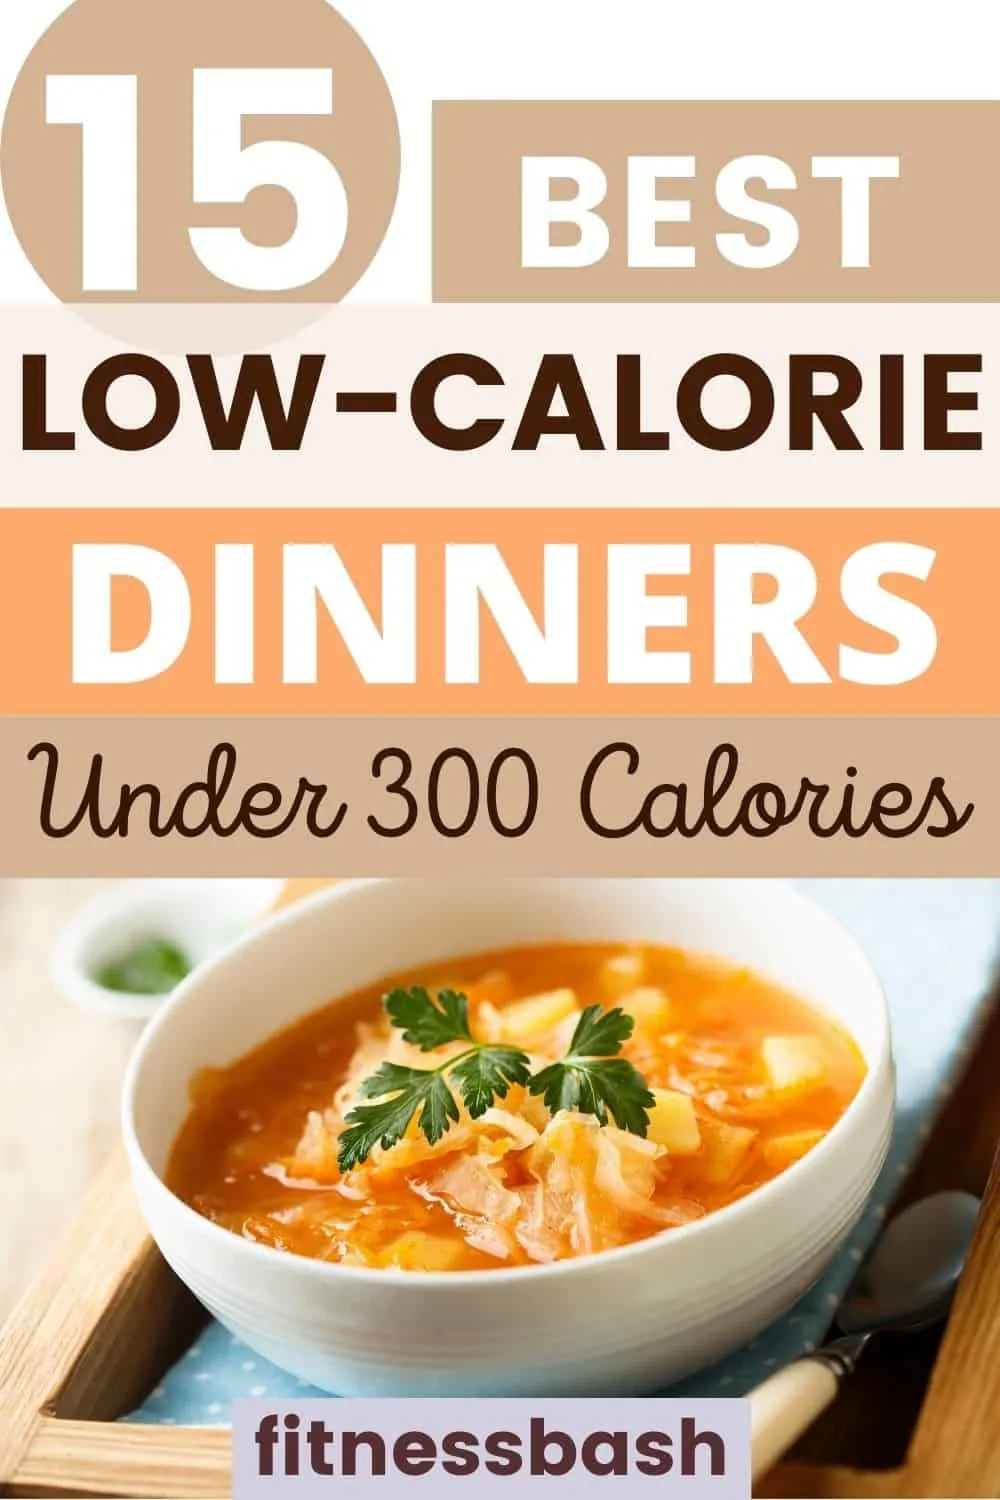 low-calorie dinner ideas